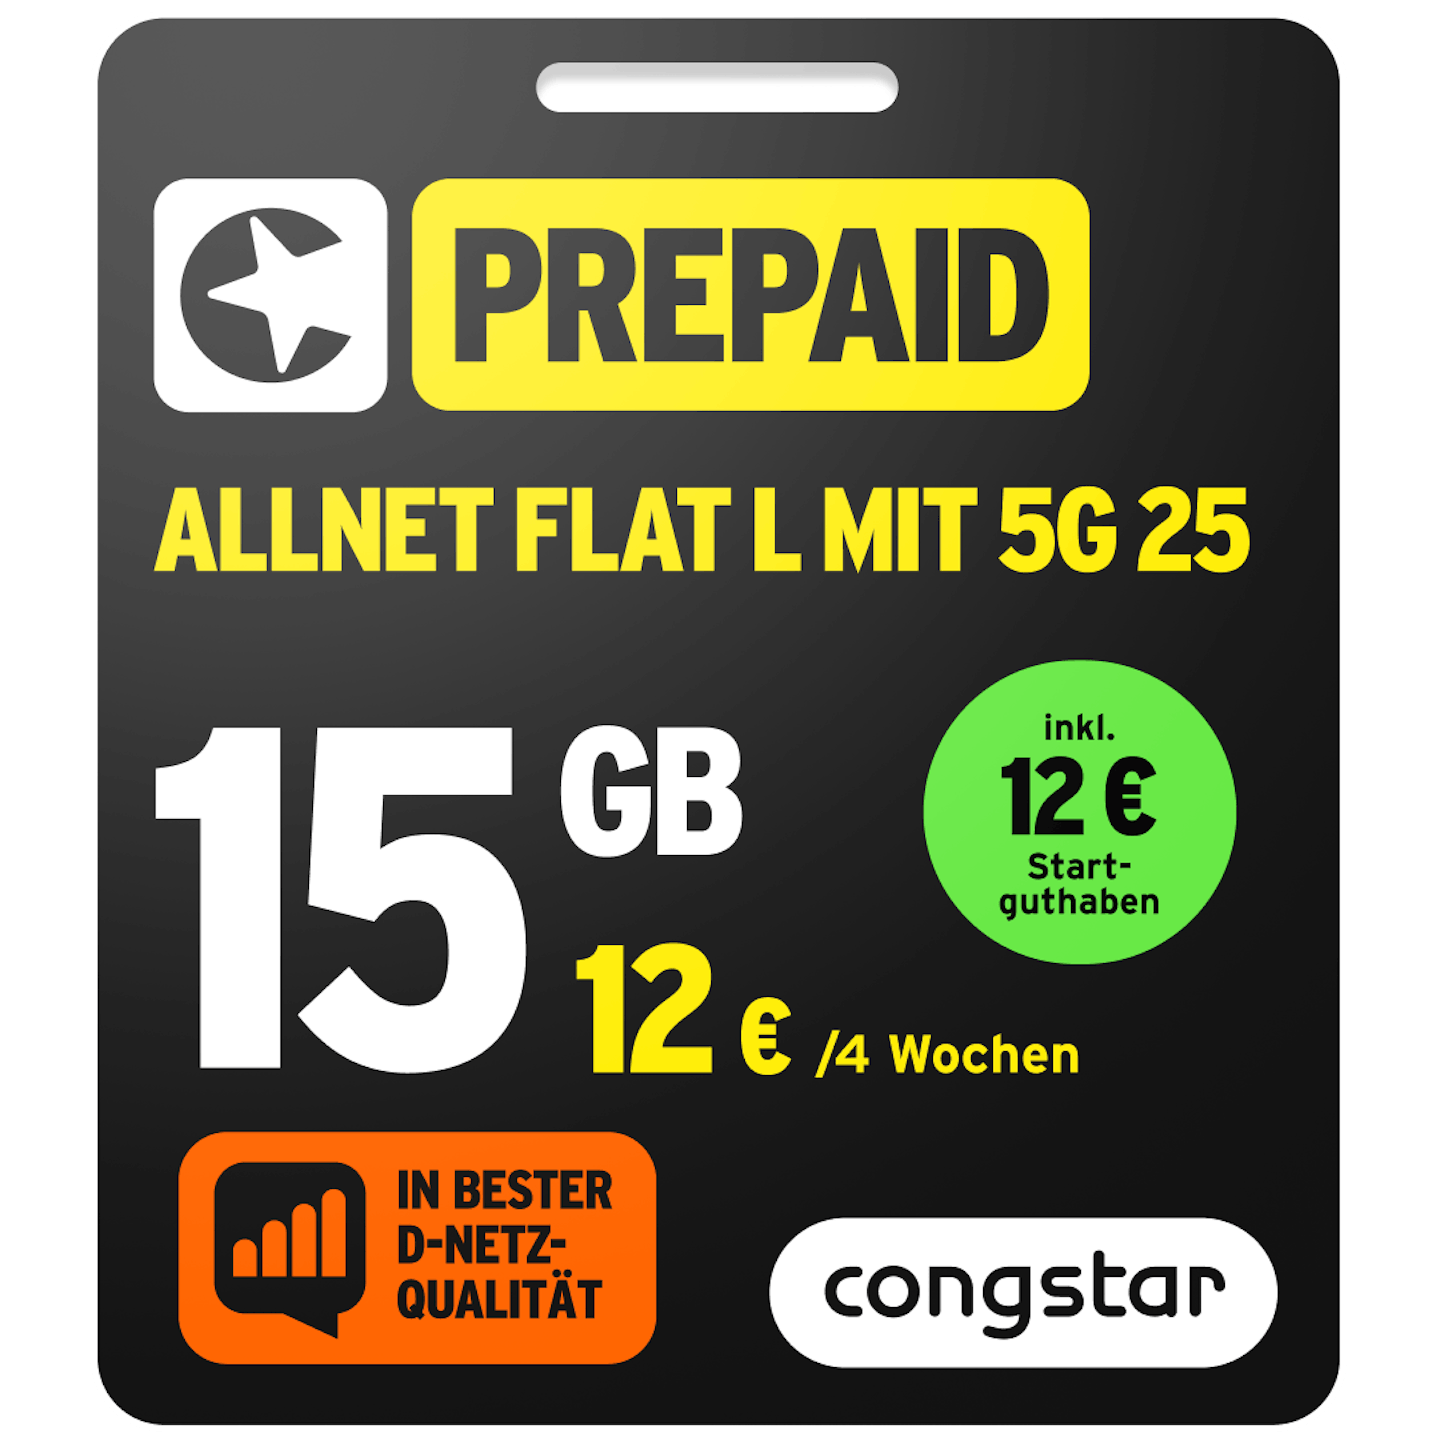 Bild der Verpackung des Prepaid Allnet L mit 5G 25